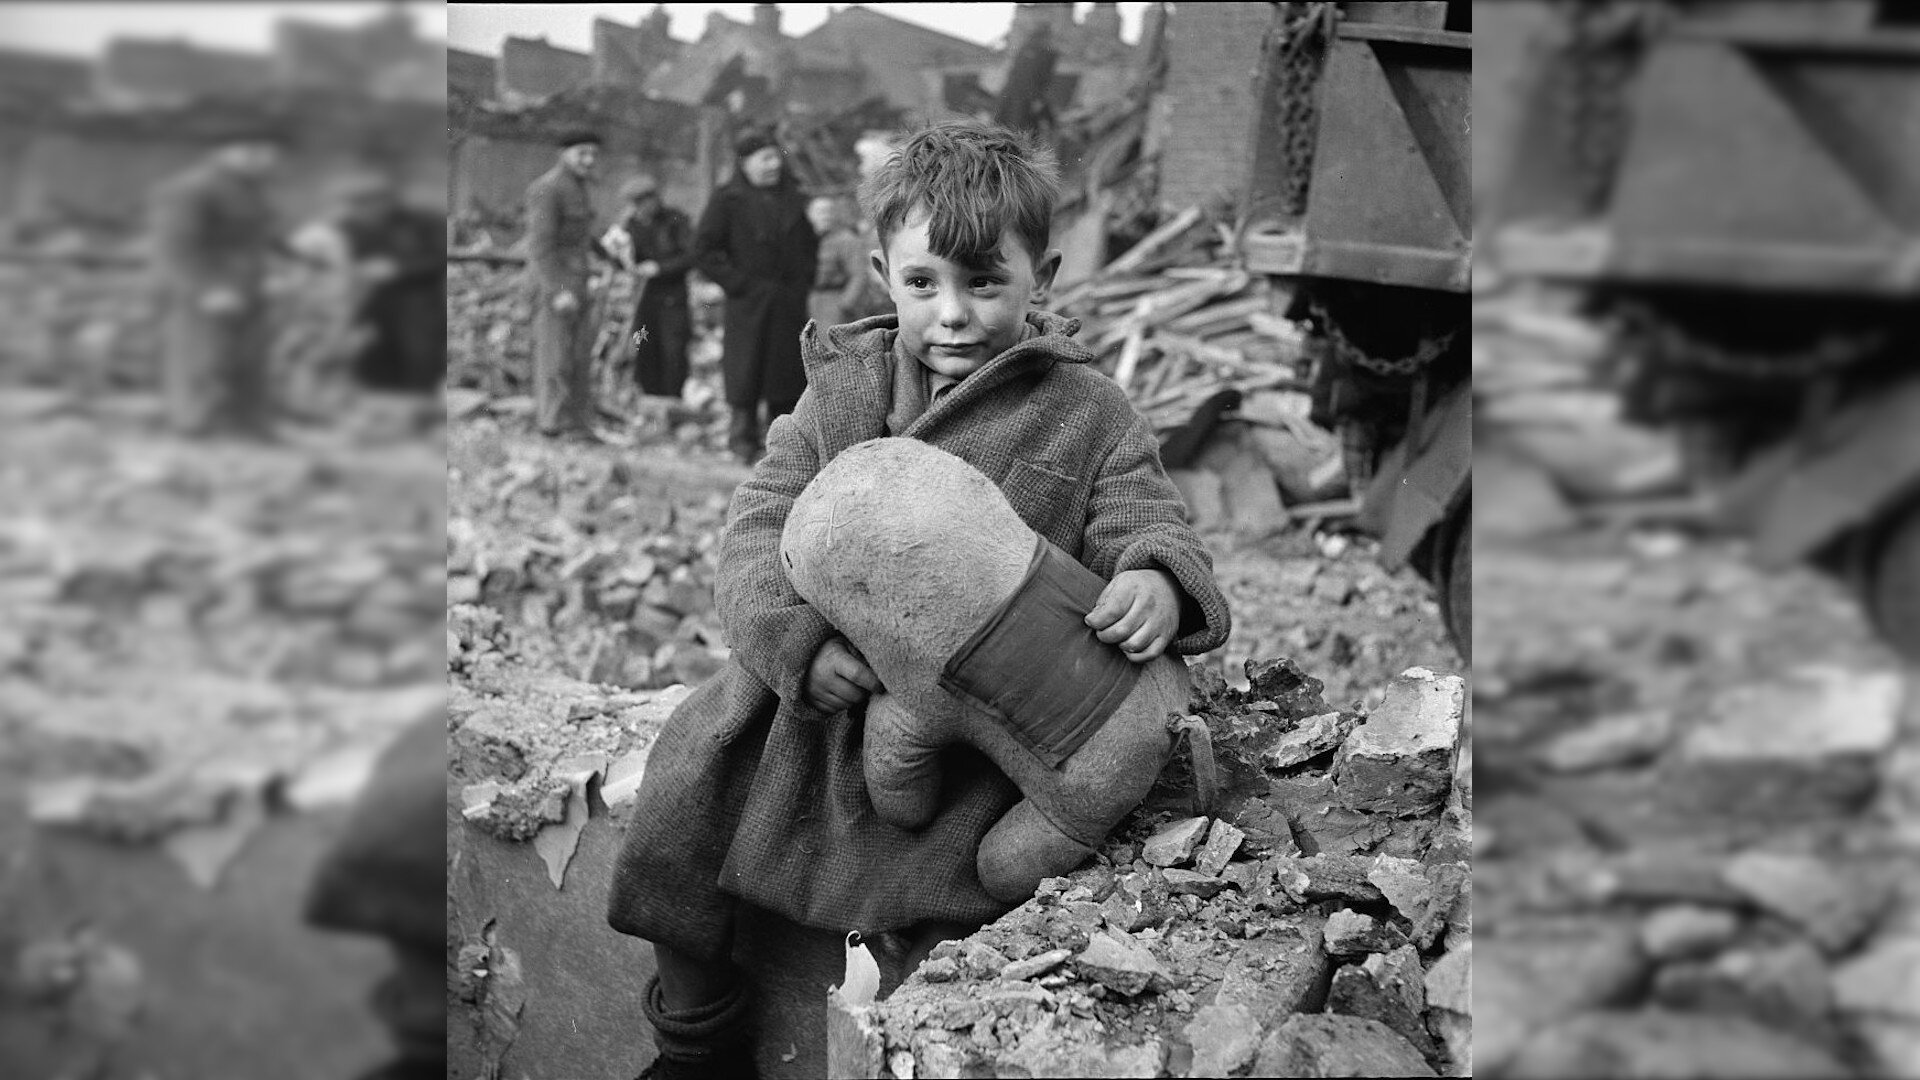 Zdjęcie przedstawia małego chłopca w grubym płaszczu, który trzyma w rękach dużą, pluszową zabawkę. W tle znajdują się inni ludzie oraz gruz i kamienie.